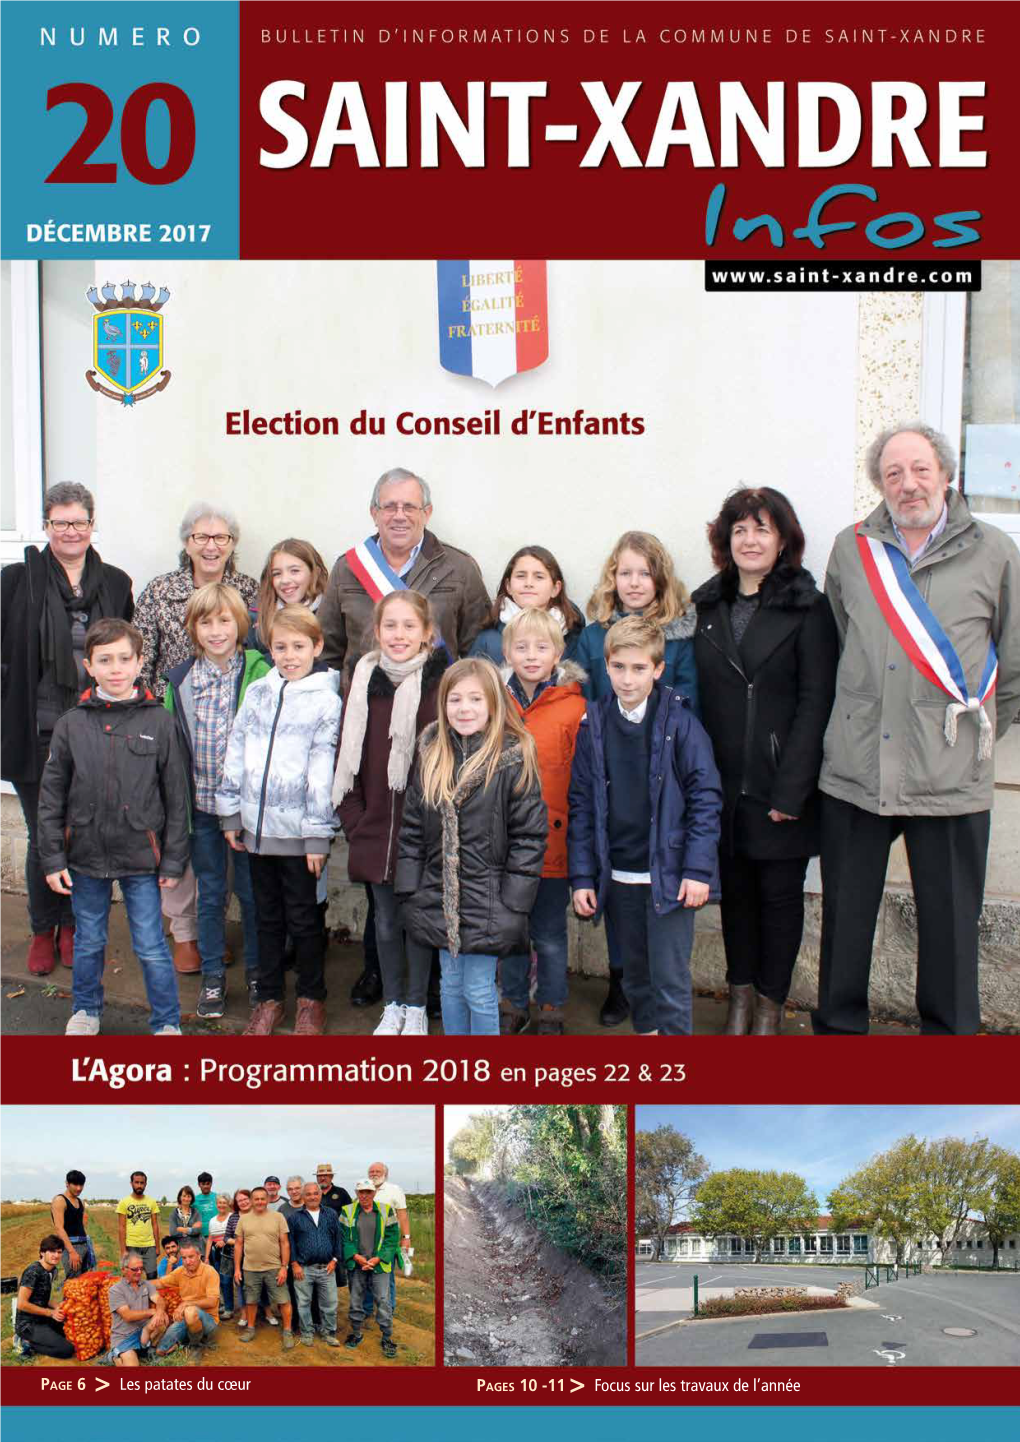 Lire L'article Du Bulletin Municipal De Saint-Xandre Dans Son Intégralité